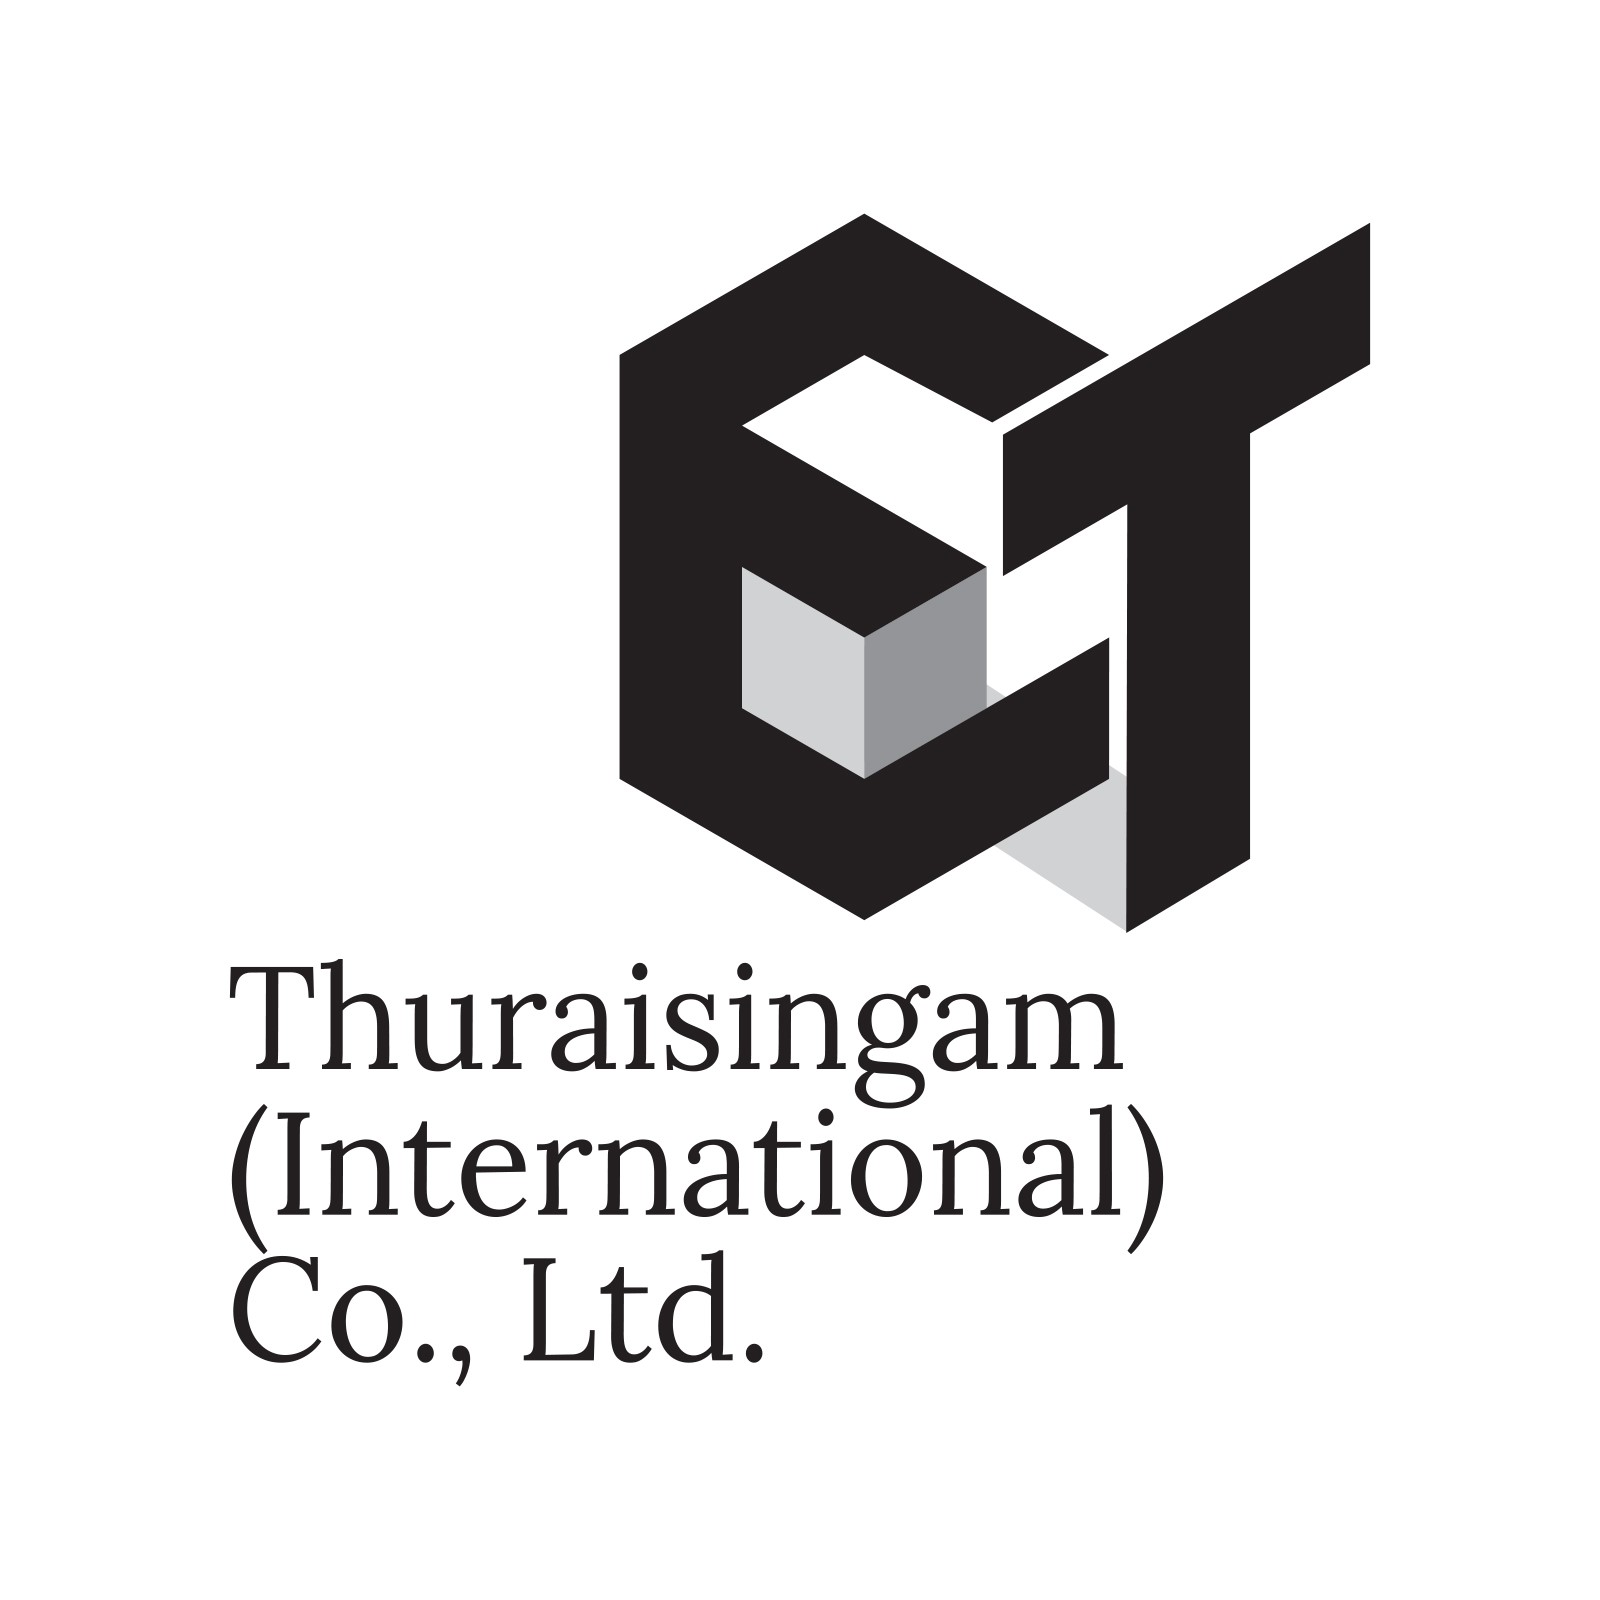 Thuraisingam logo